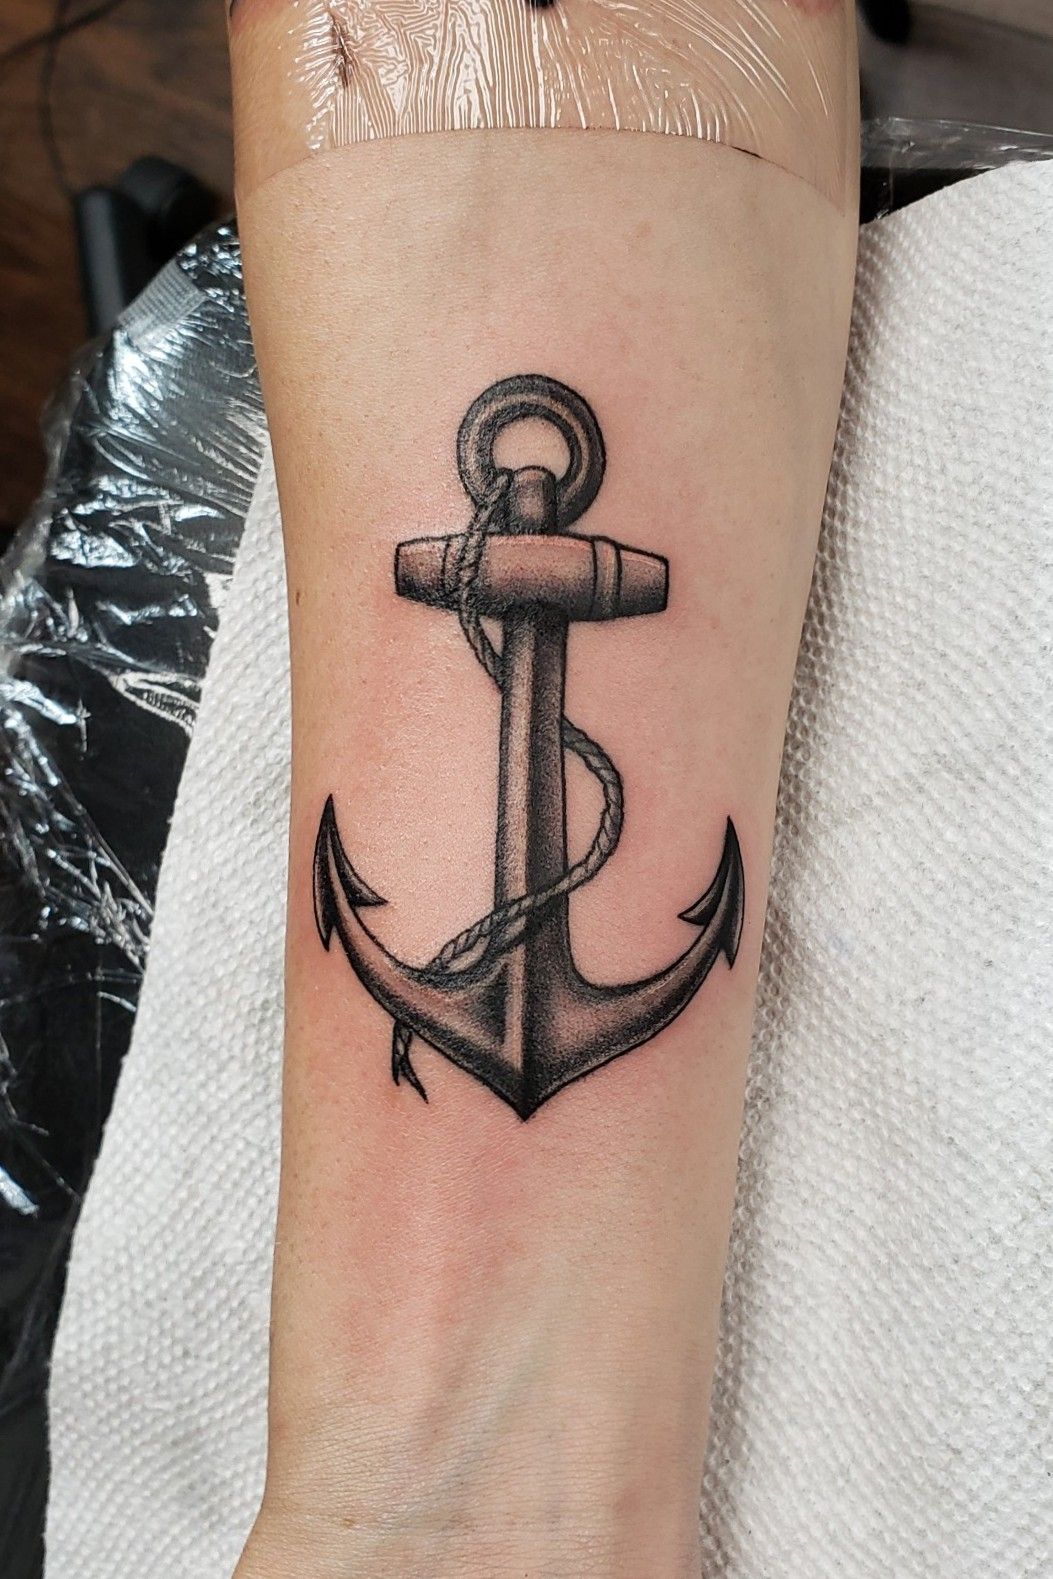 Anchor tattoo by Pedro Correa on Dribbble